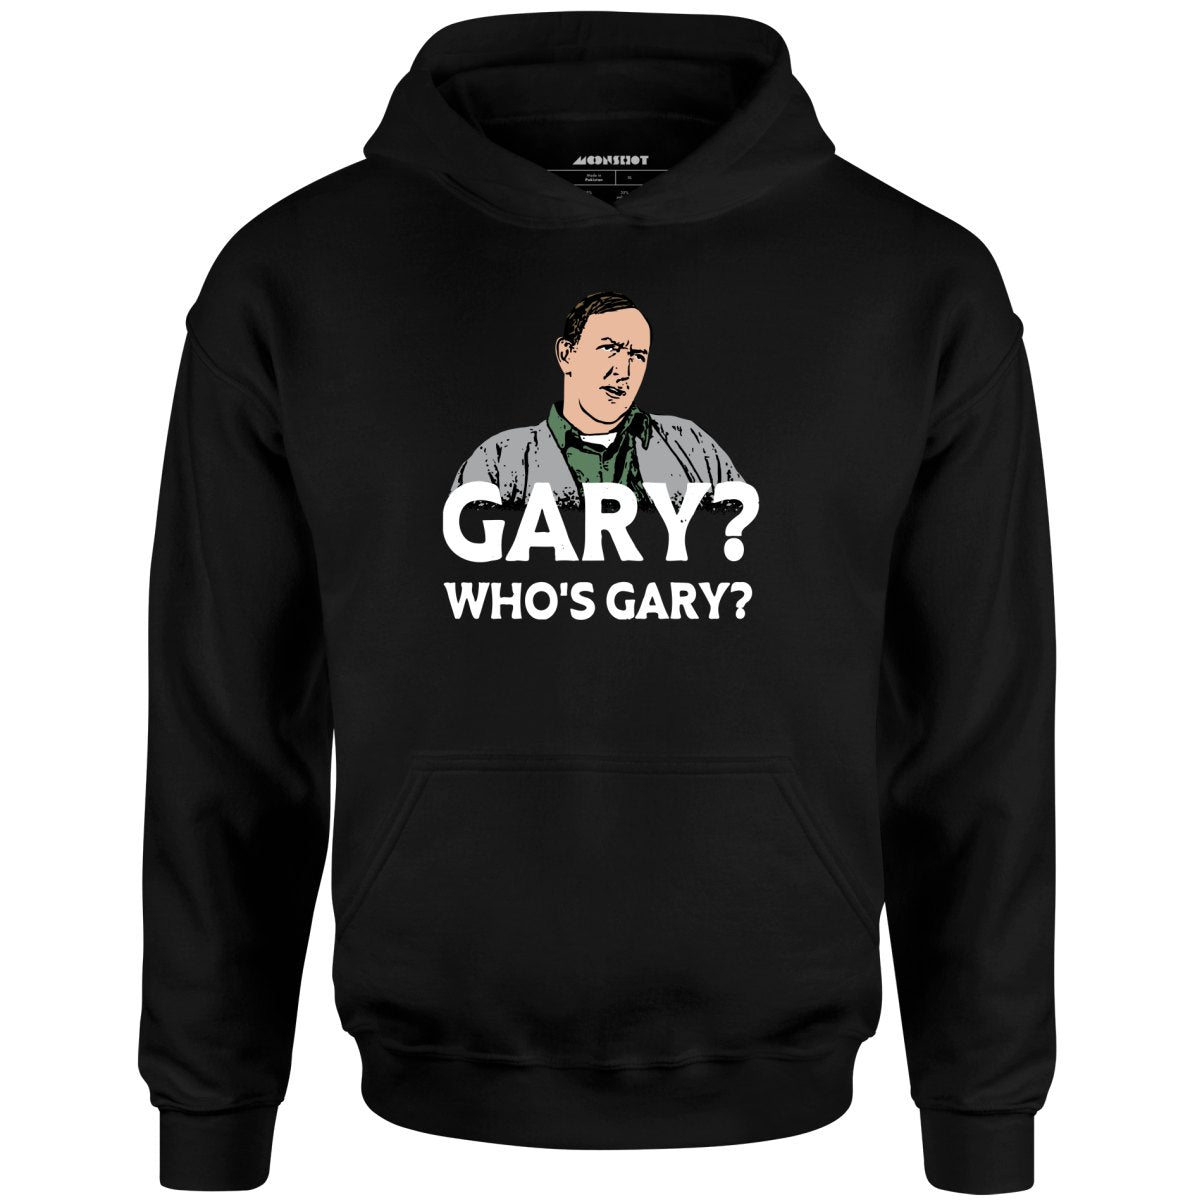 Gary? Who's Gary? - Unisex Hoodie